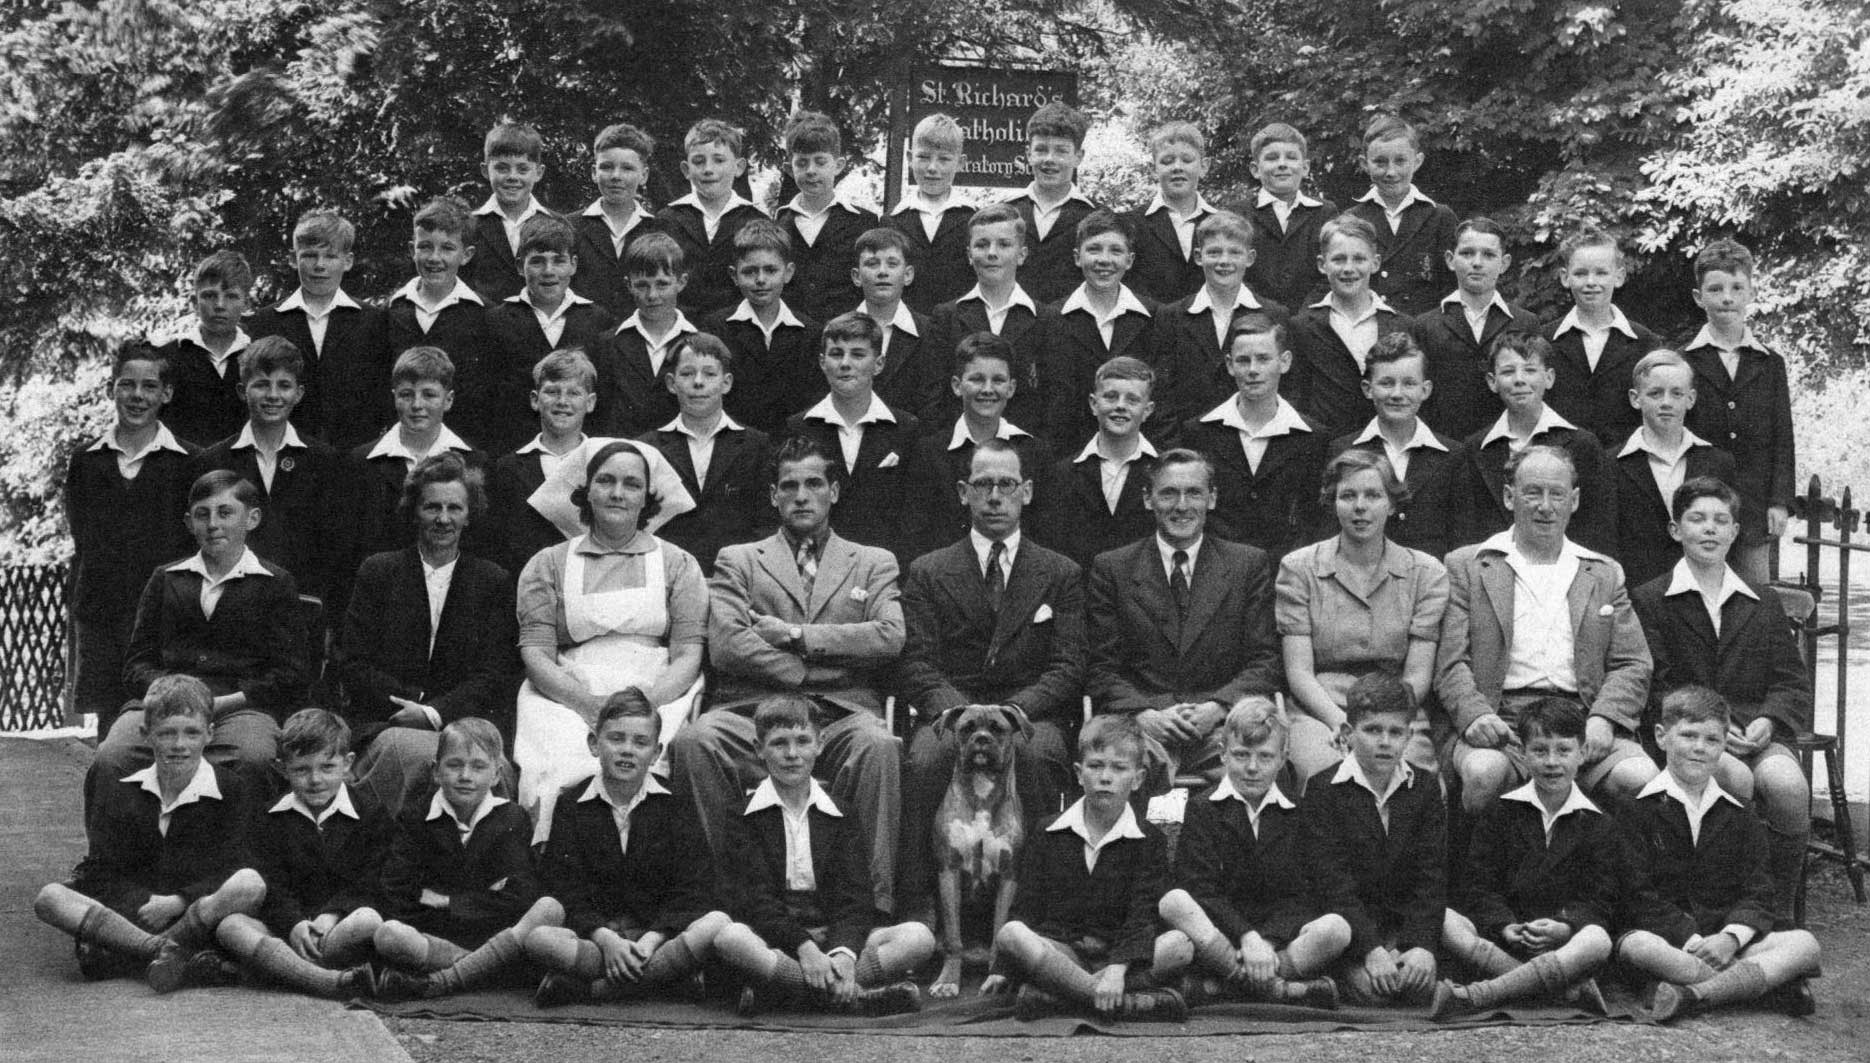 St Richard's school Little Malvern 1950